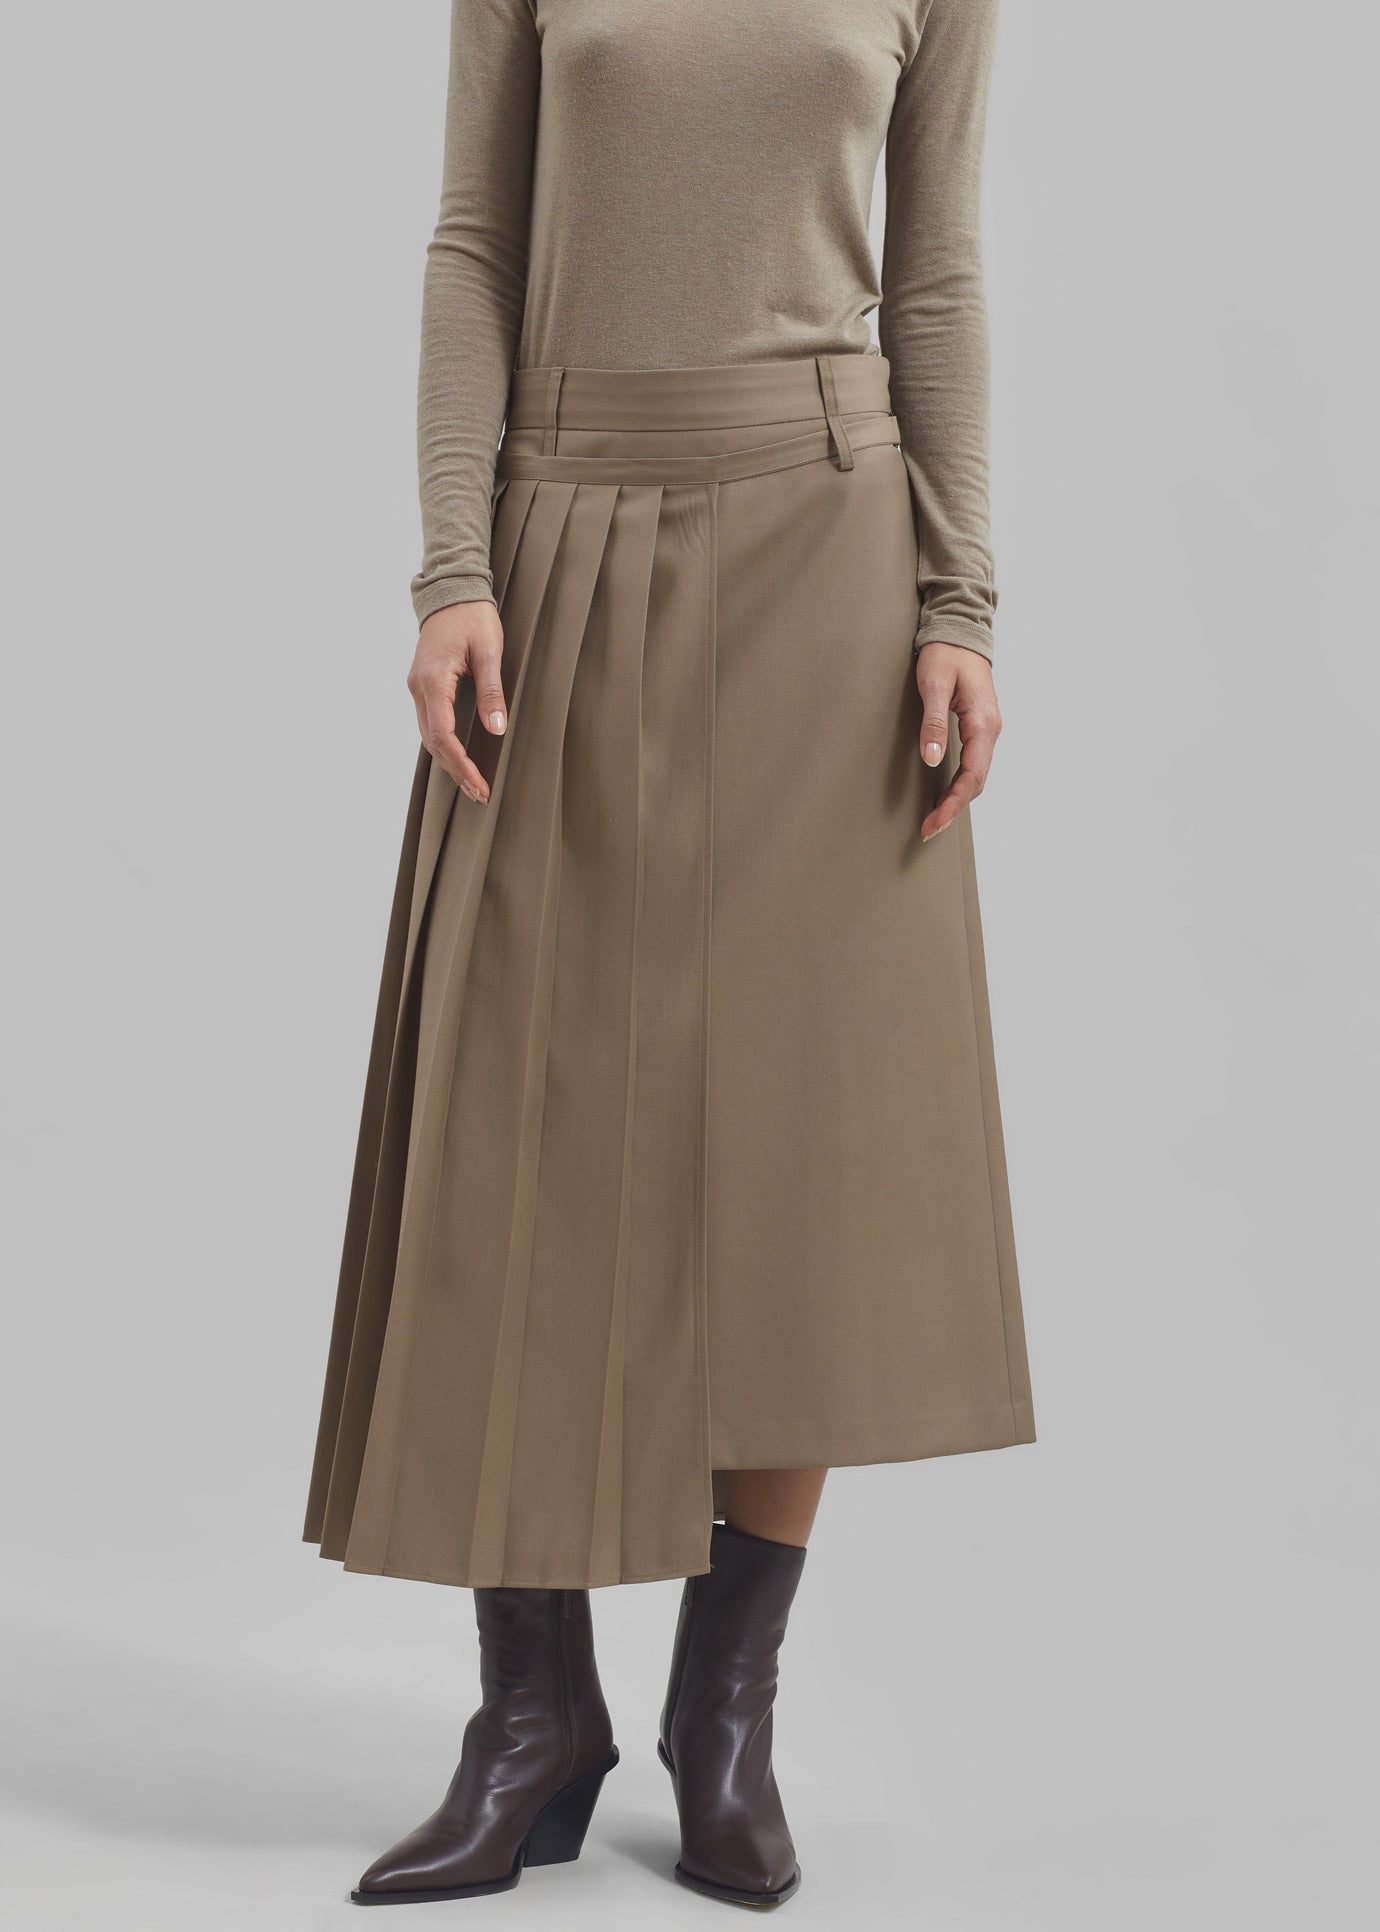 Irie Pleated Skirt - Beige - 1